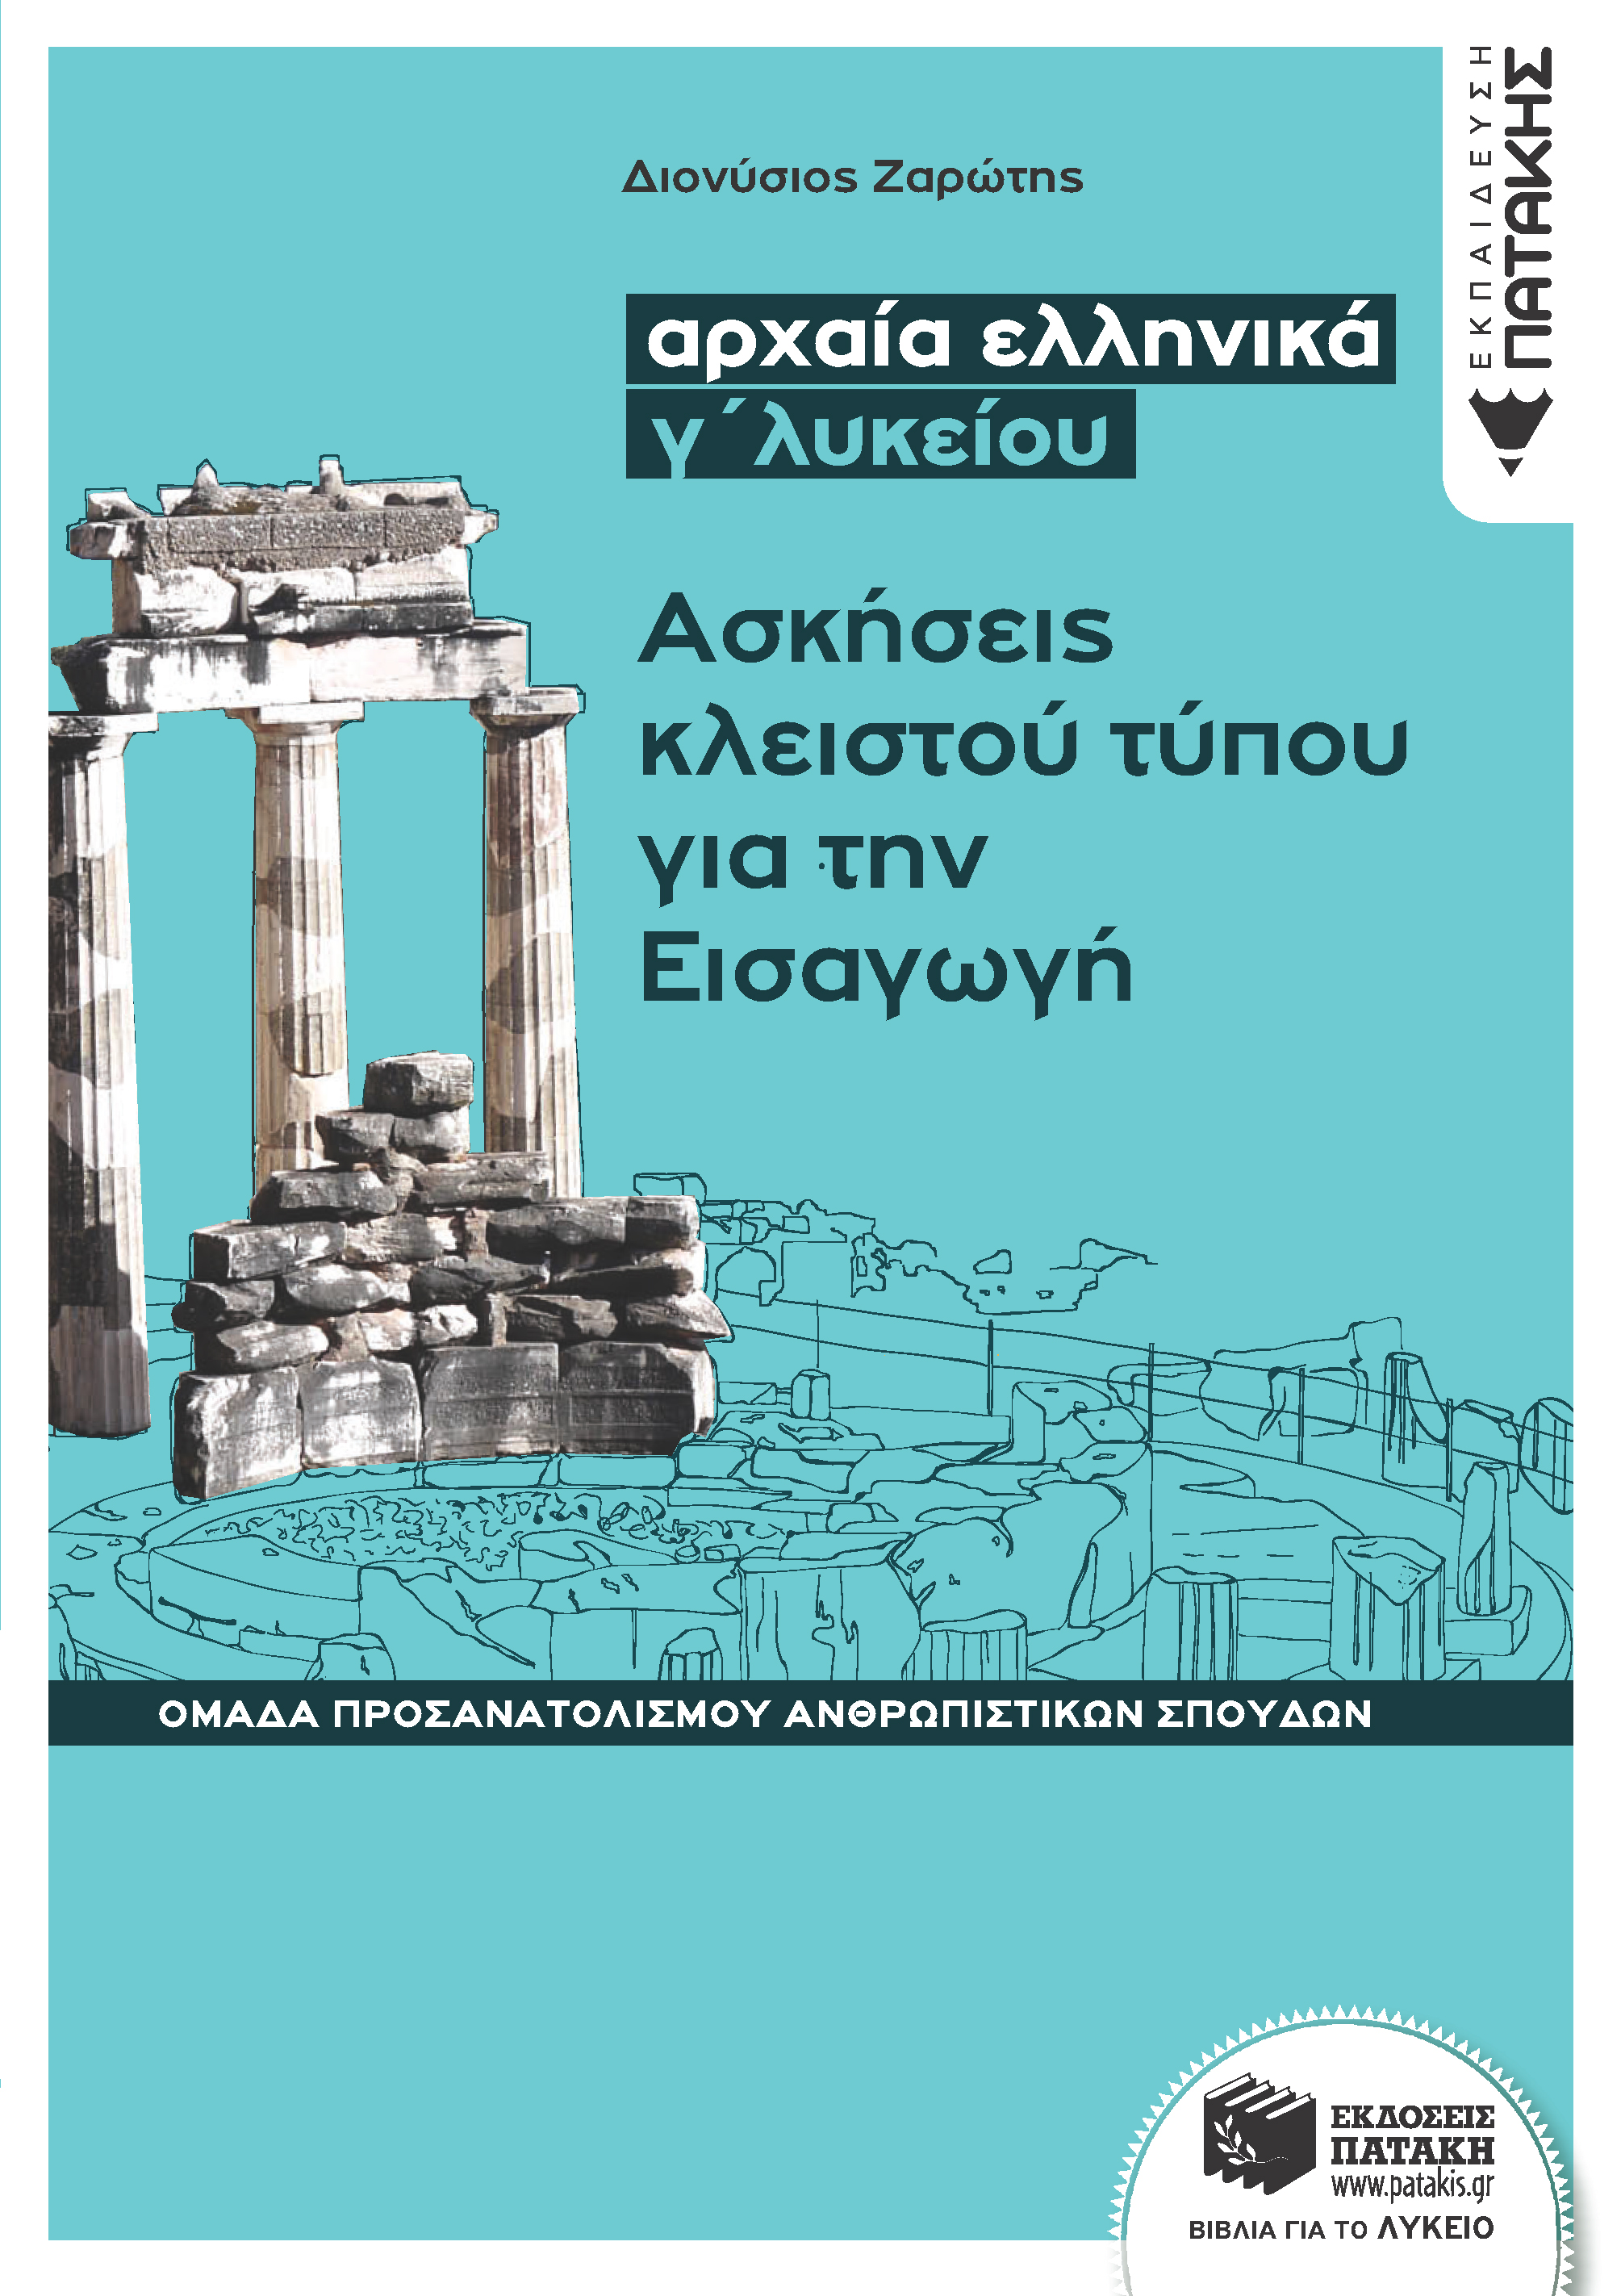 Αρχαία ελληνικά Γ΄ Λυκείου - Ασκήσεις κλειστού τύπου για την Εισαγωγή (Ομάδας προσανατολισμού θεωρητικών σπουδών) (e-book / pdf)